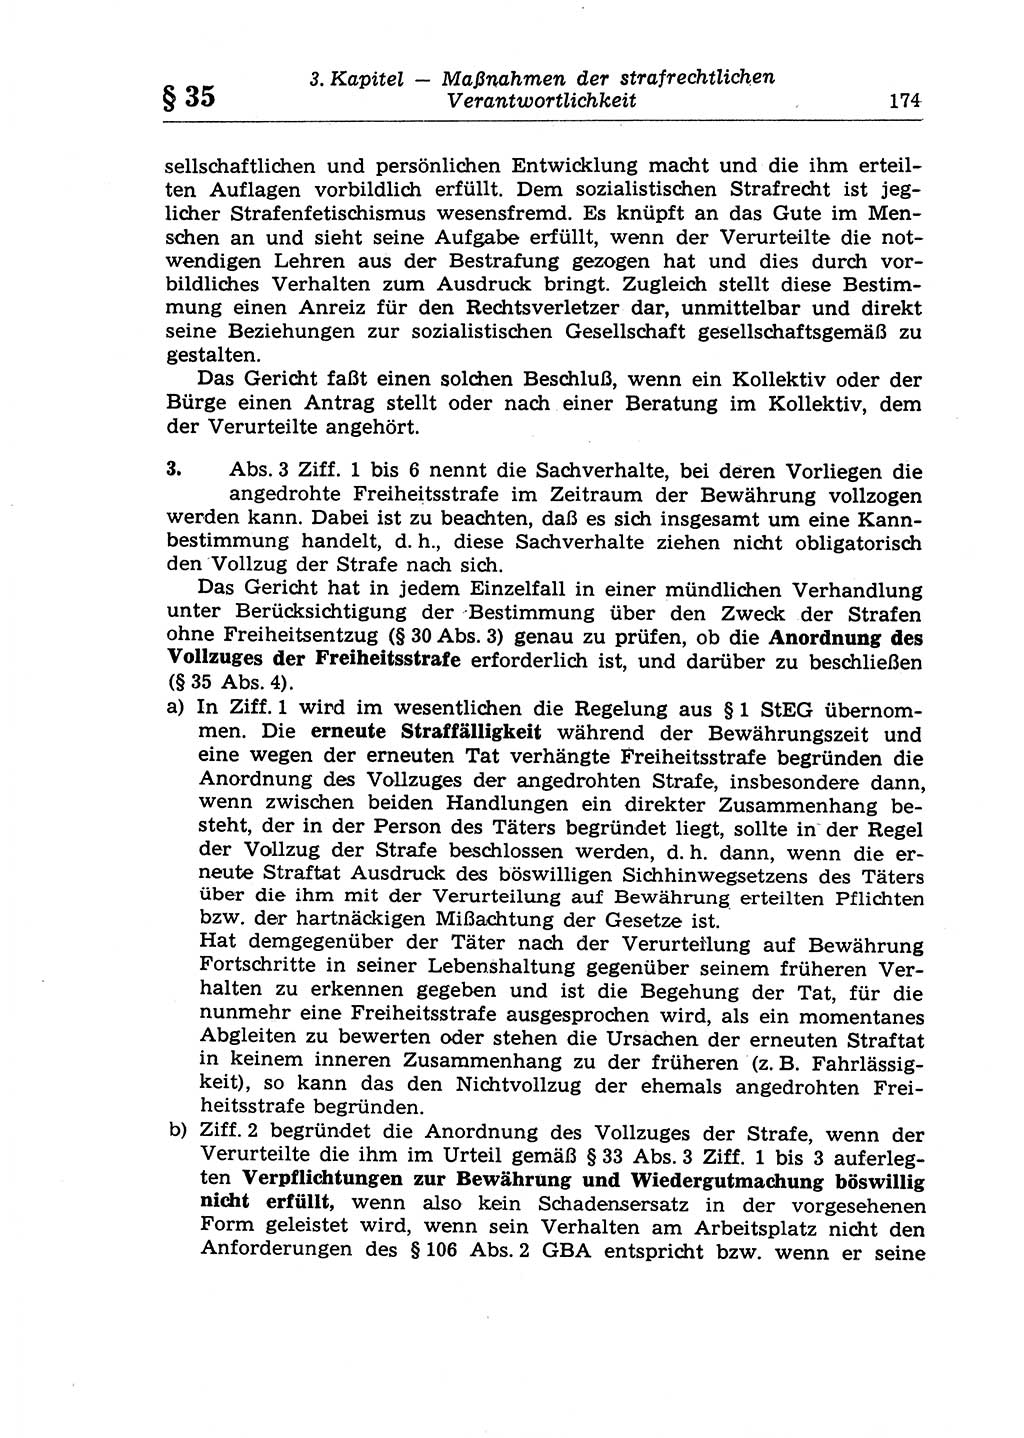 Strafrecht der Deutschen Demokratischen Republik (DDR), Lehrkommentar zum Strafgesetzbuch (StGB), Allgemeiner Teil 1970, Seite 174 (Strafr. DDR Lehrkomm. StGB AT 1970, S. 174)